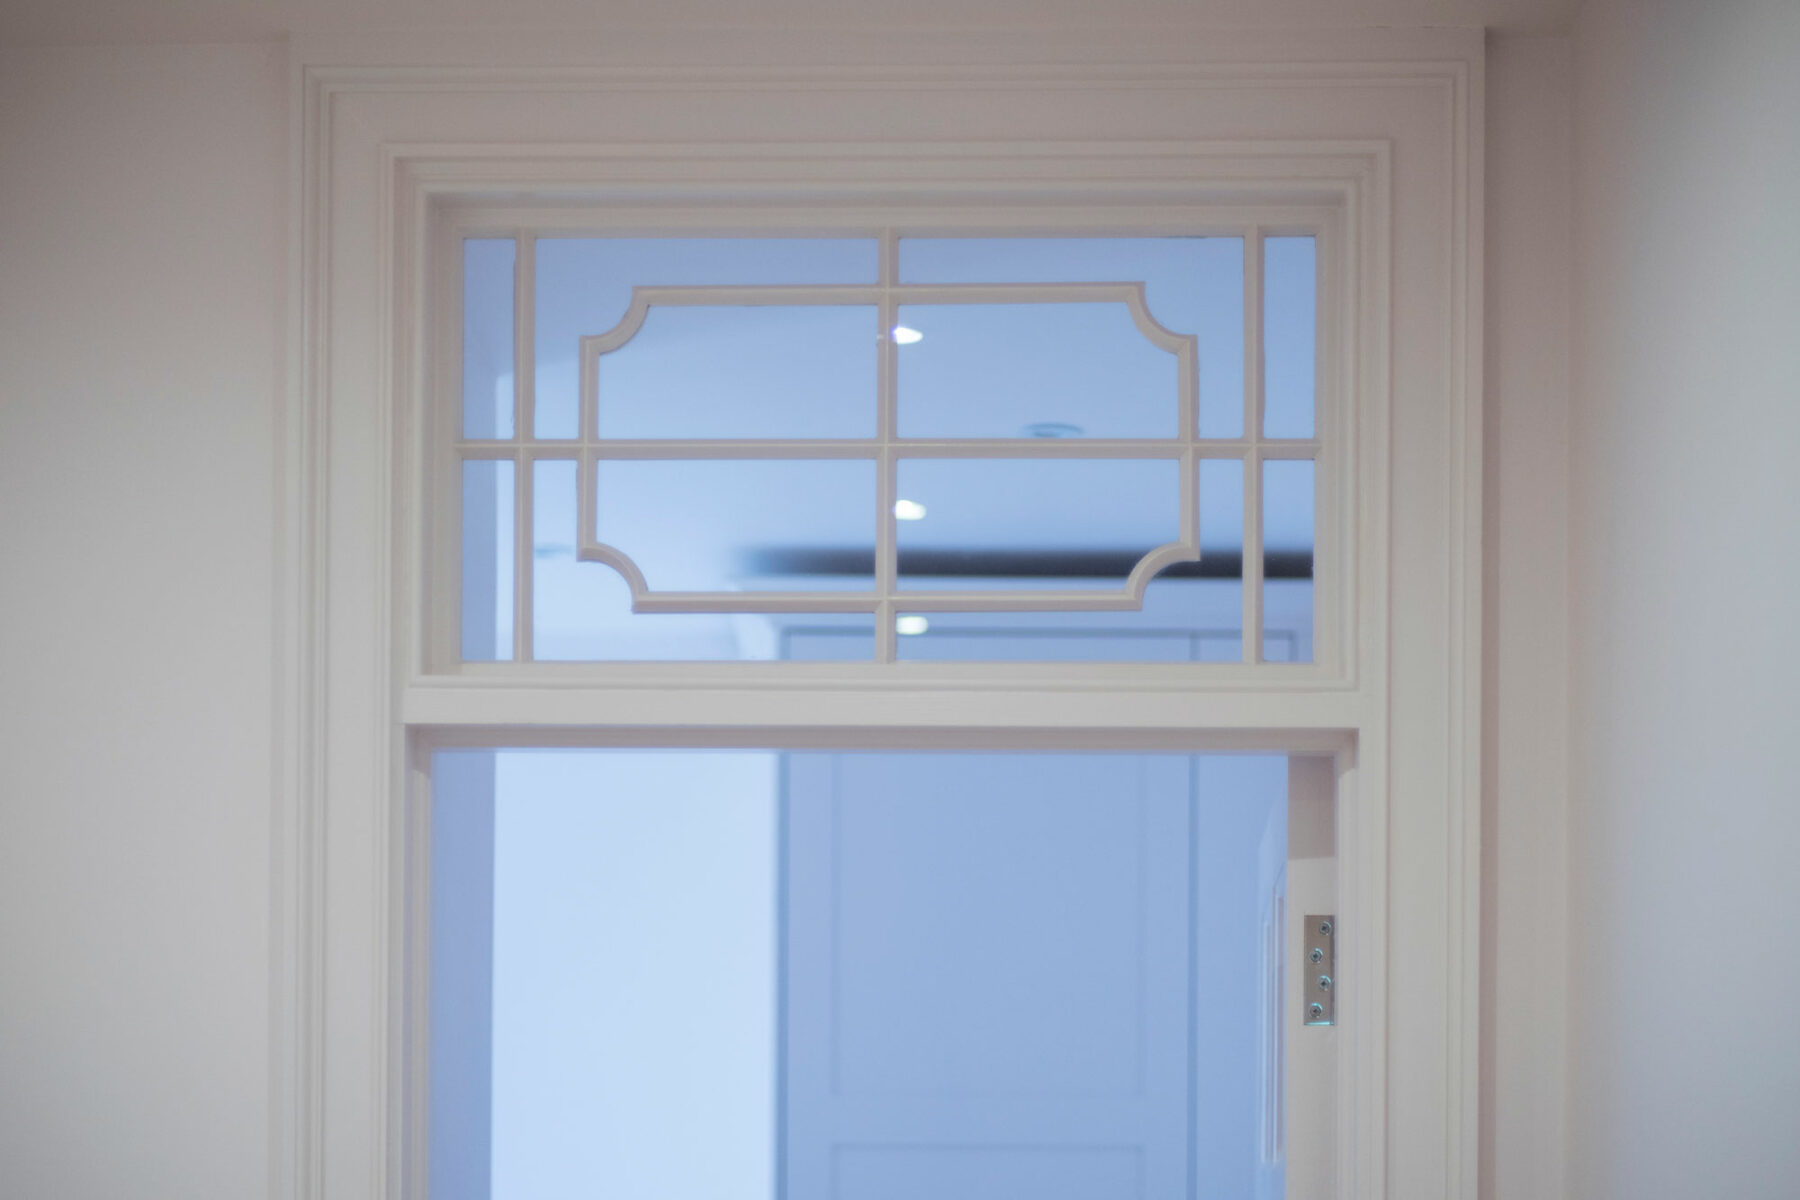 Period detailing in door window frame